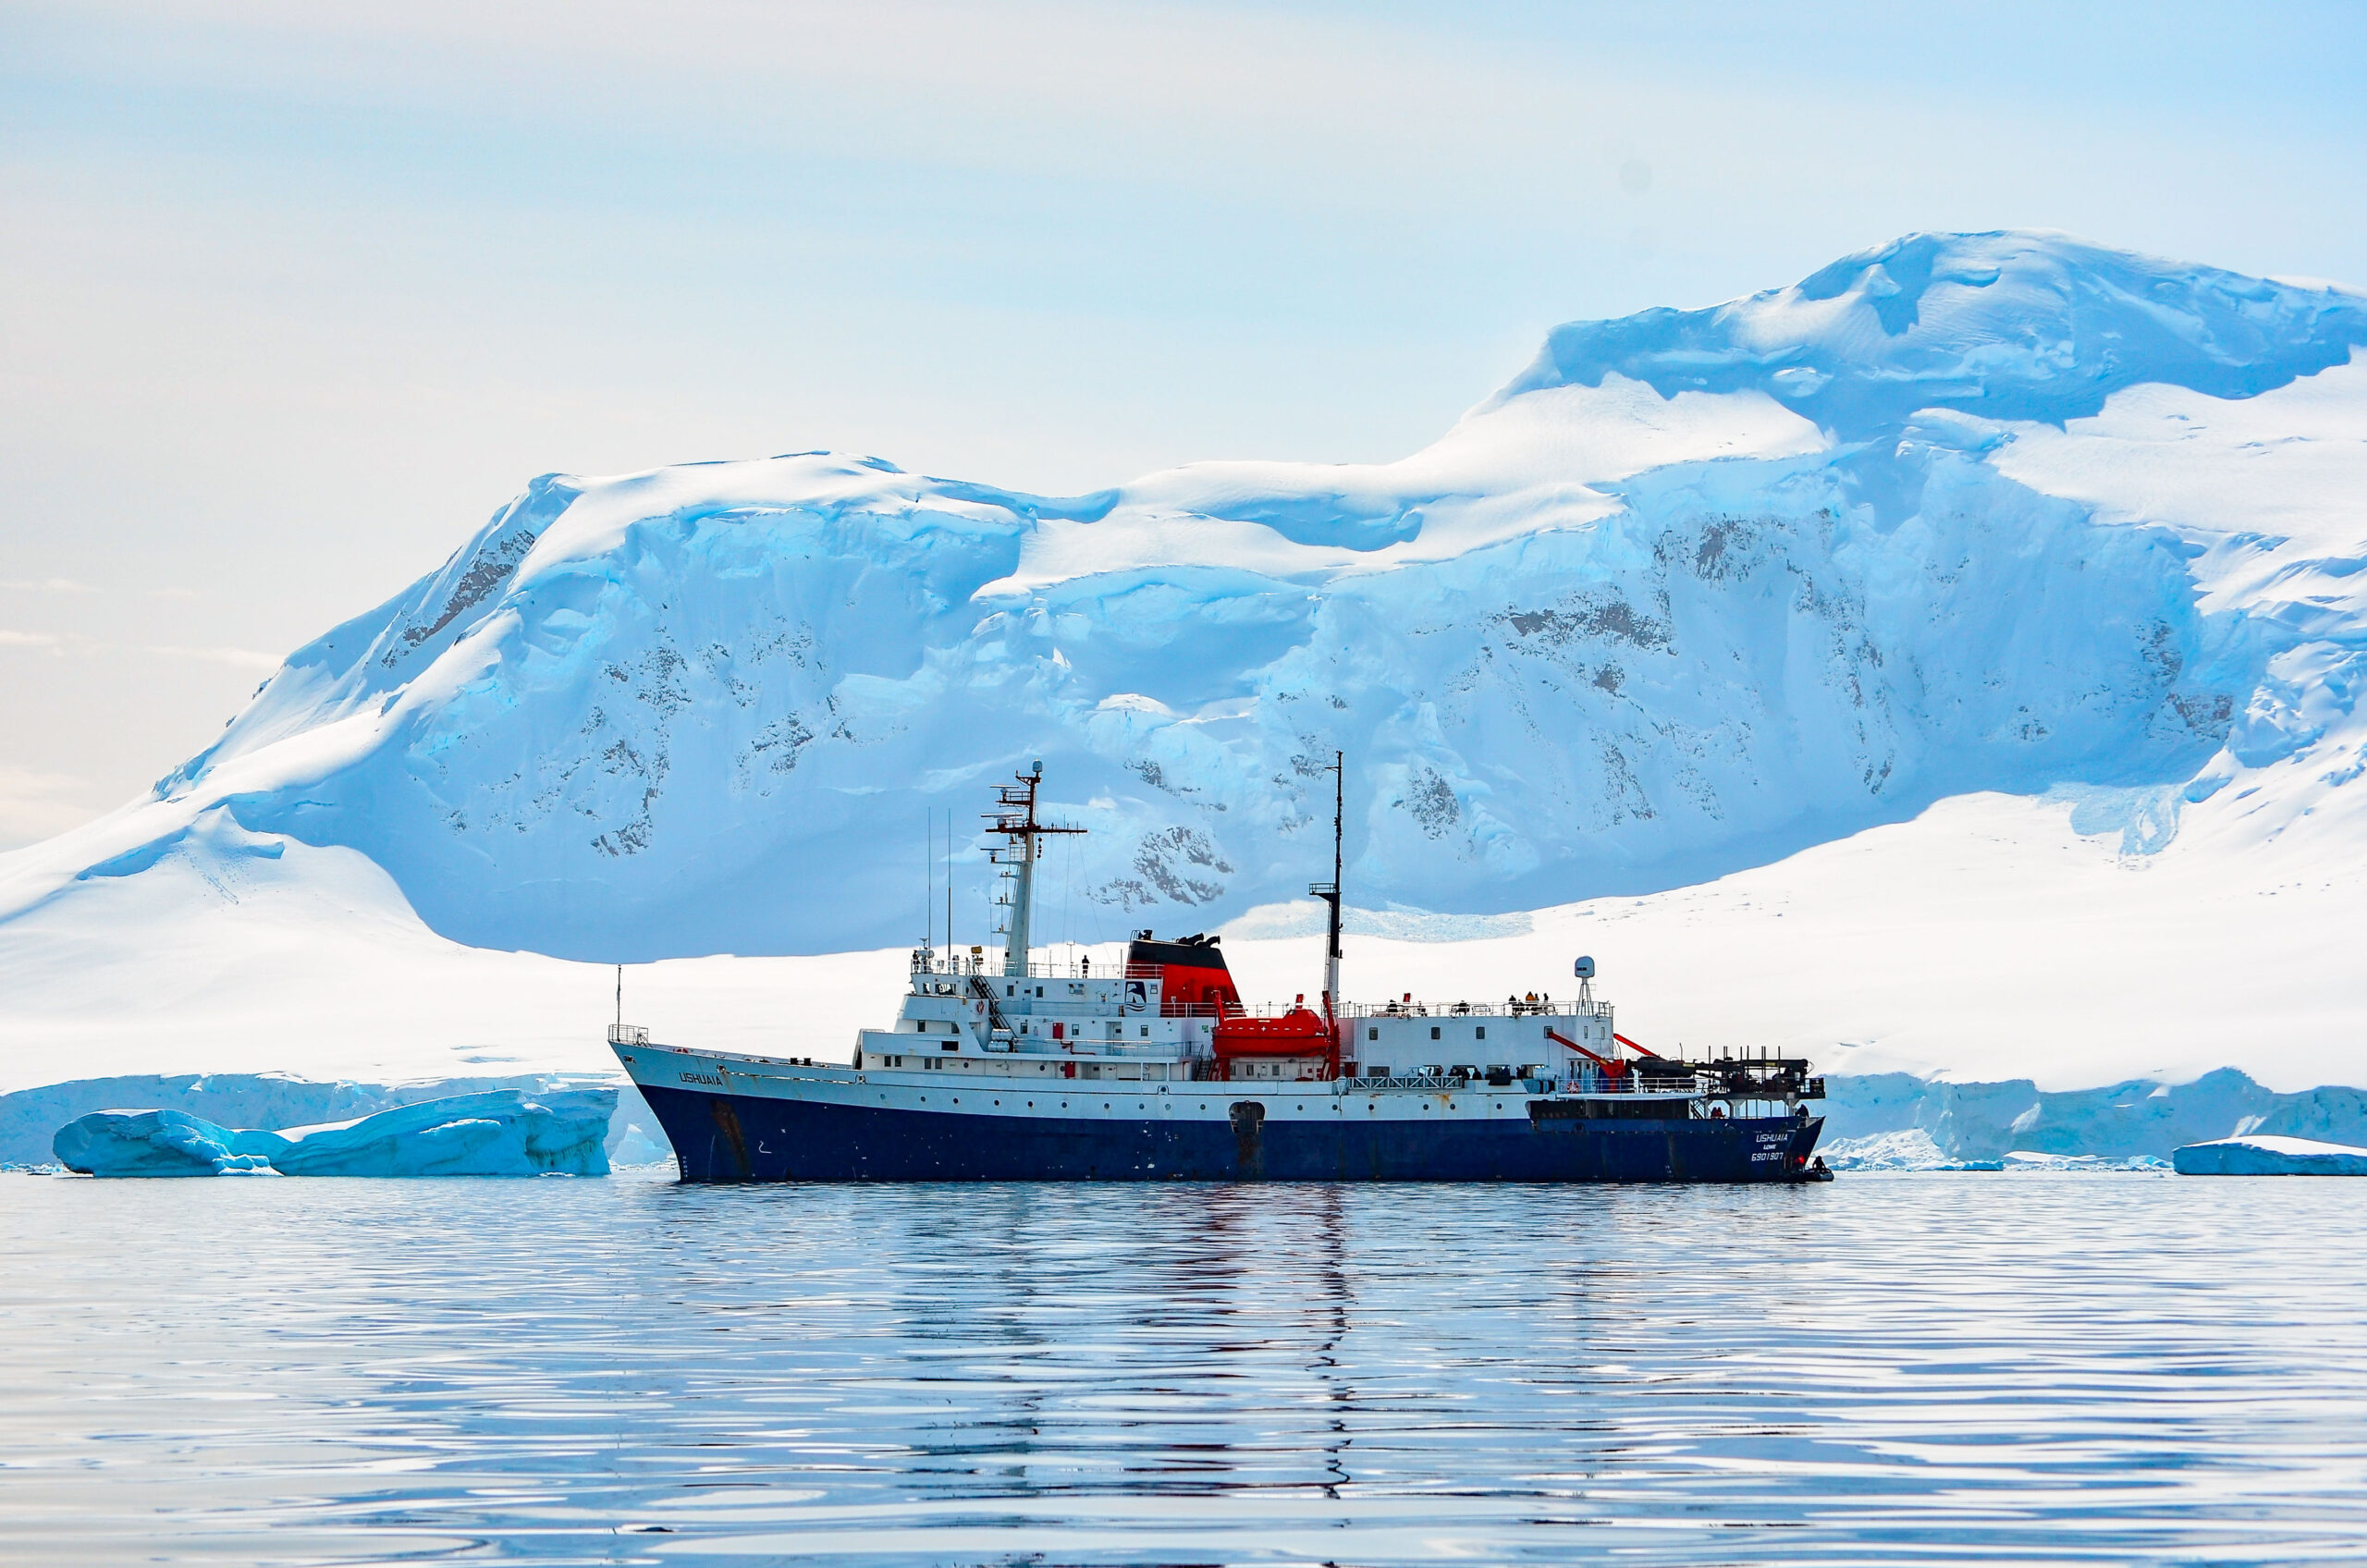 Antarctica, part 1: Embarkation and the Awful, No-Good Drake Passage